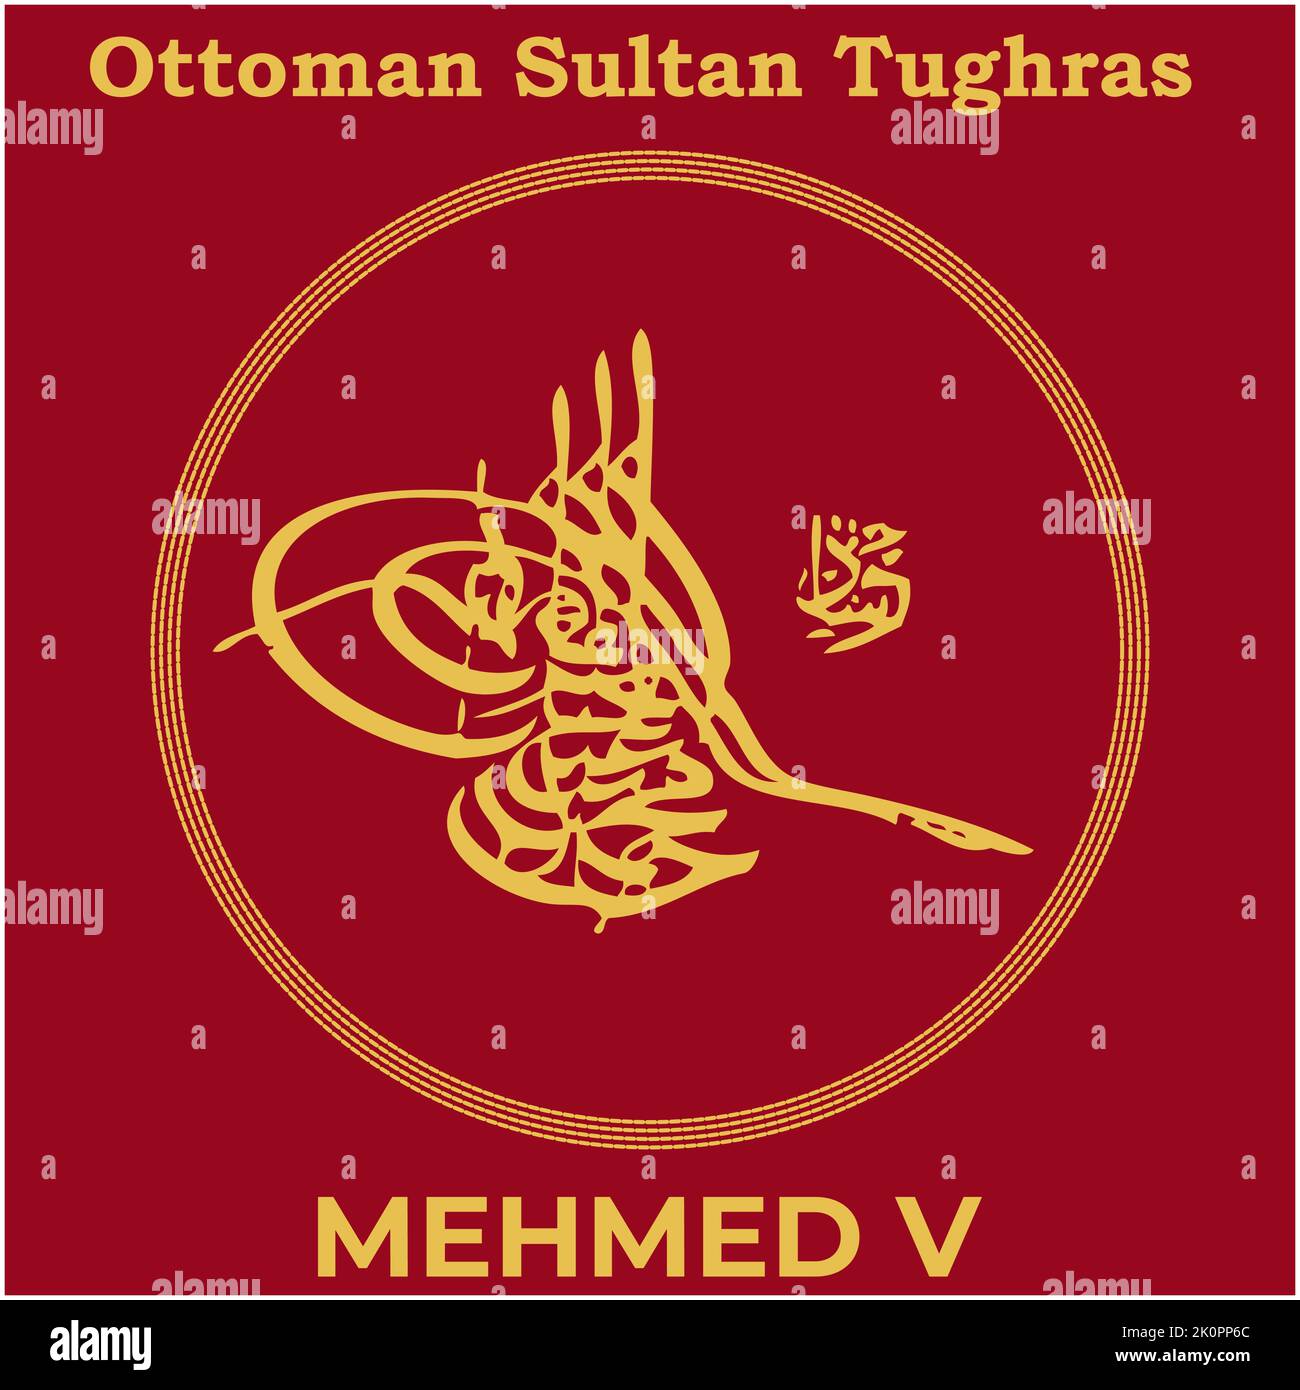 Image vectorielle avec signature Tughra du trente-cinquième Sultan ottoman Mehmed V, Tughra de Mehmed V avec fond de peinture turc traditionnel. Illustration de Vecteur